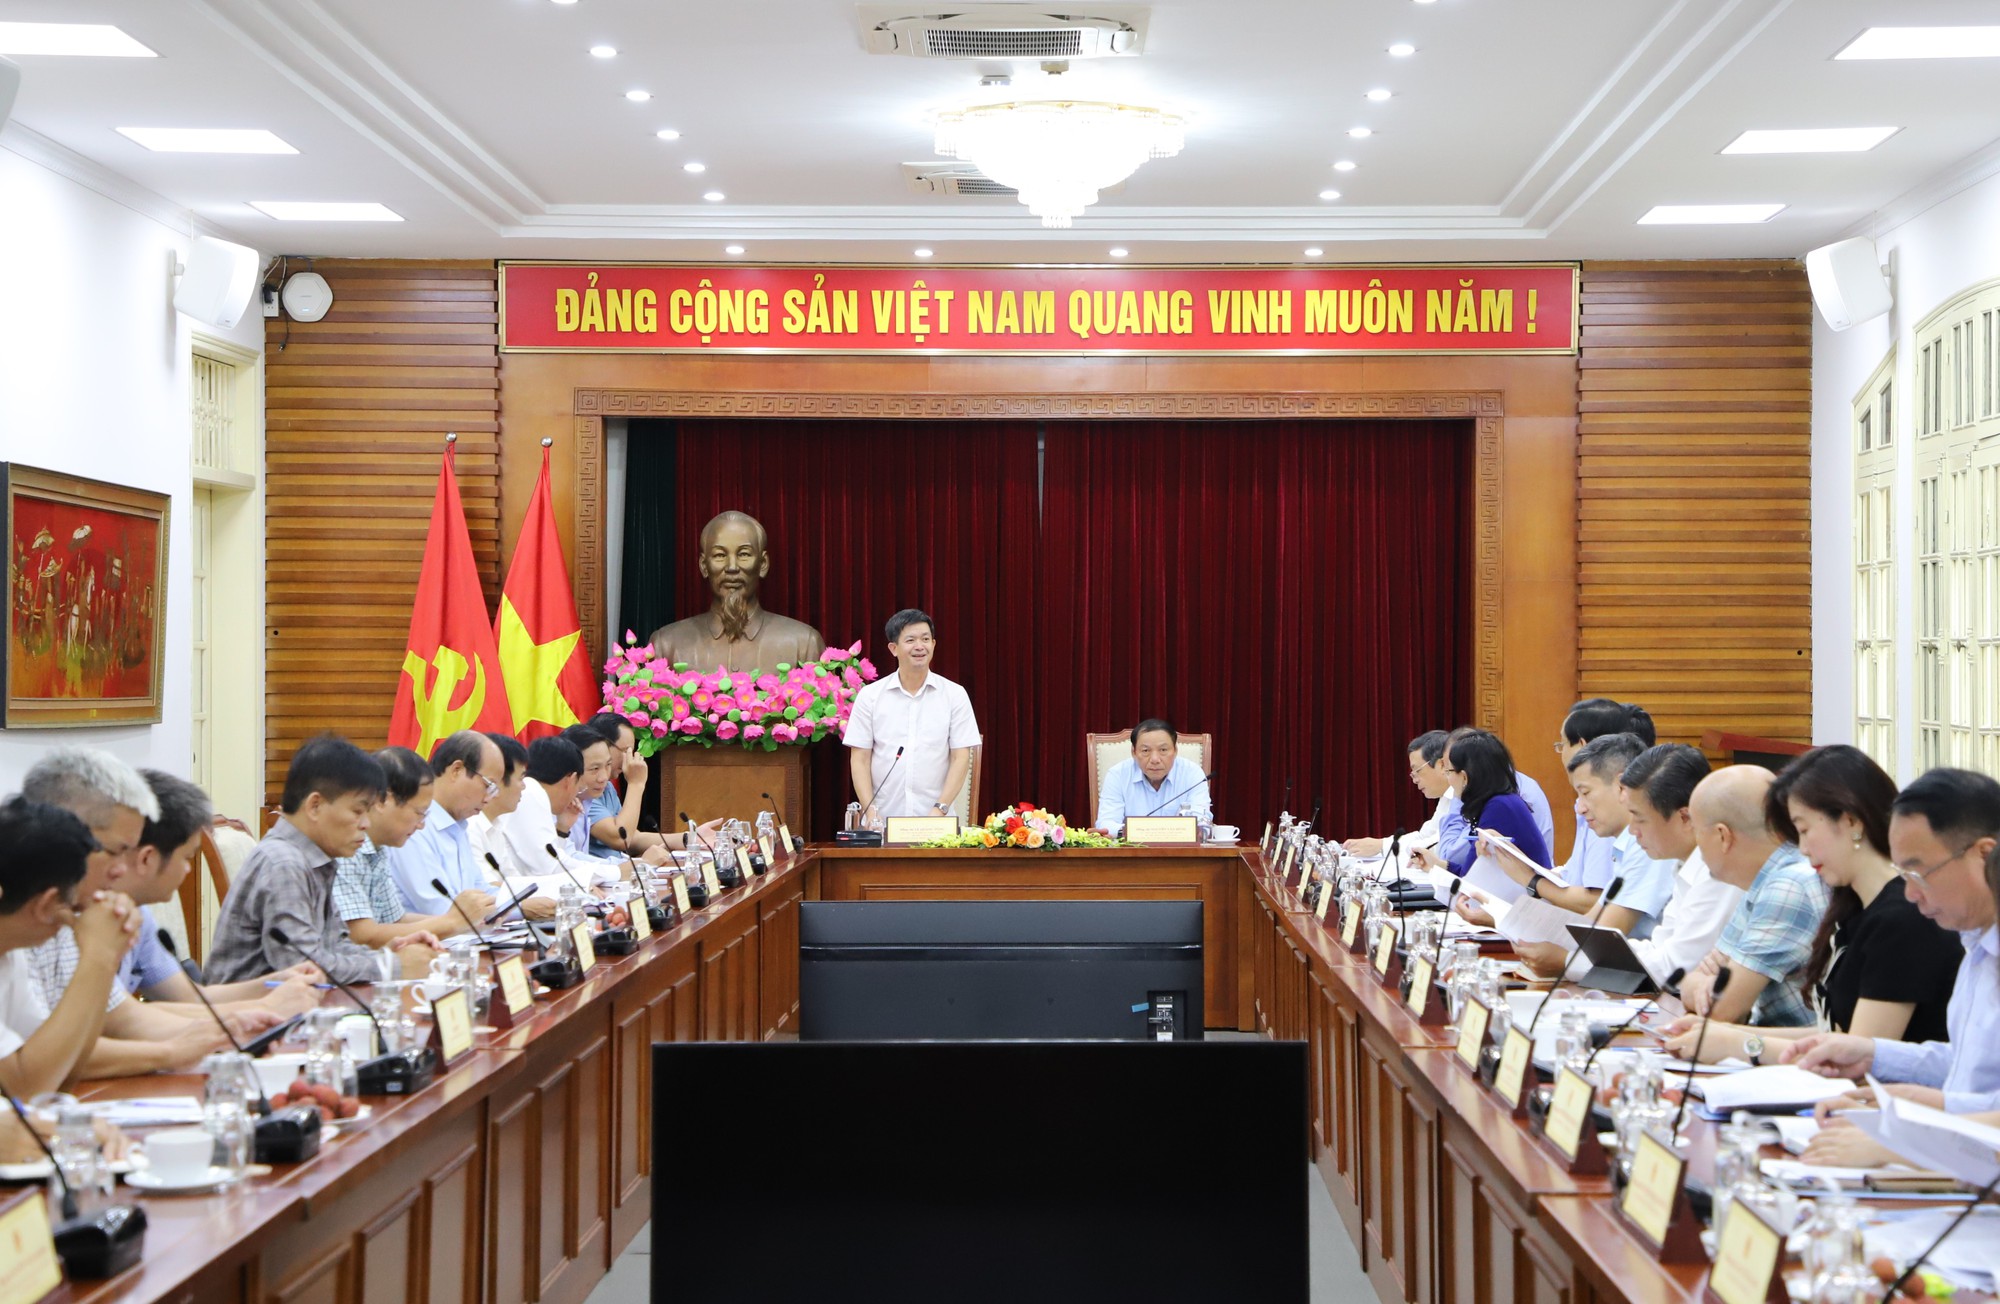 Bộ trưởng Nguyễn Văn Hùng: Nhân lên sức mạnh từ văn hóa và bằng văn hóa để phát triển tỉnh Quảng Trị - Ảnh 5.